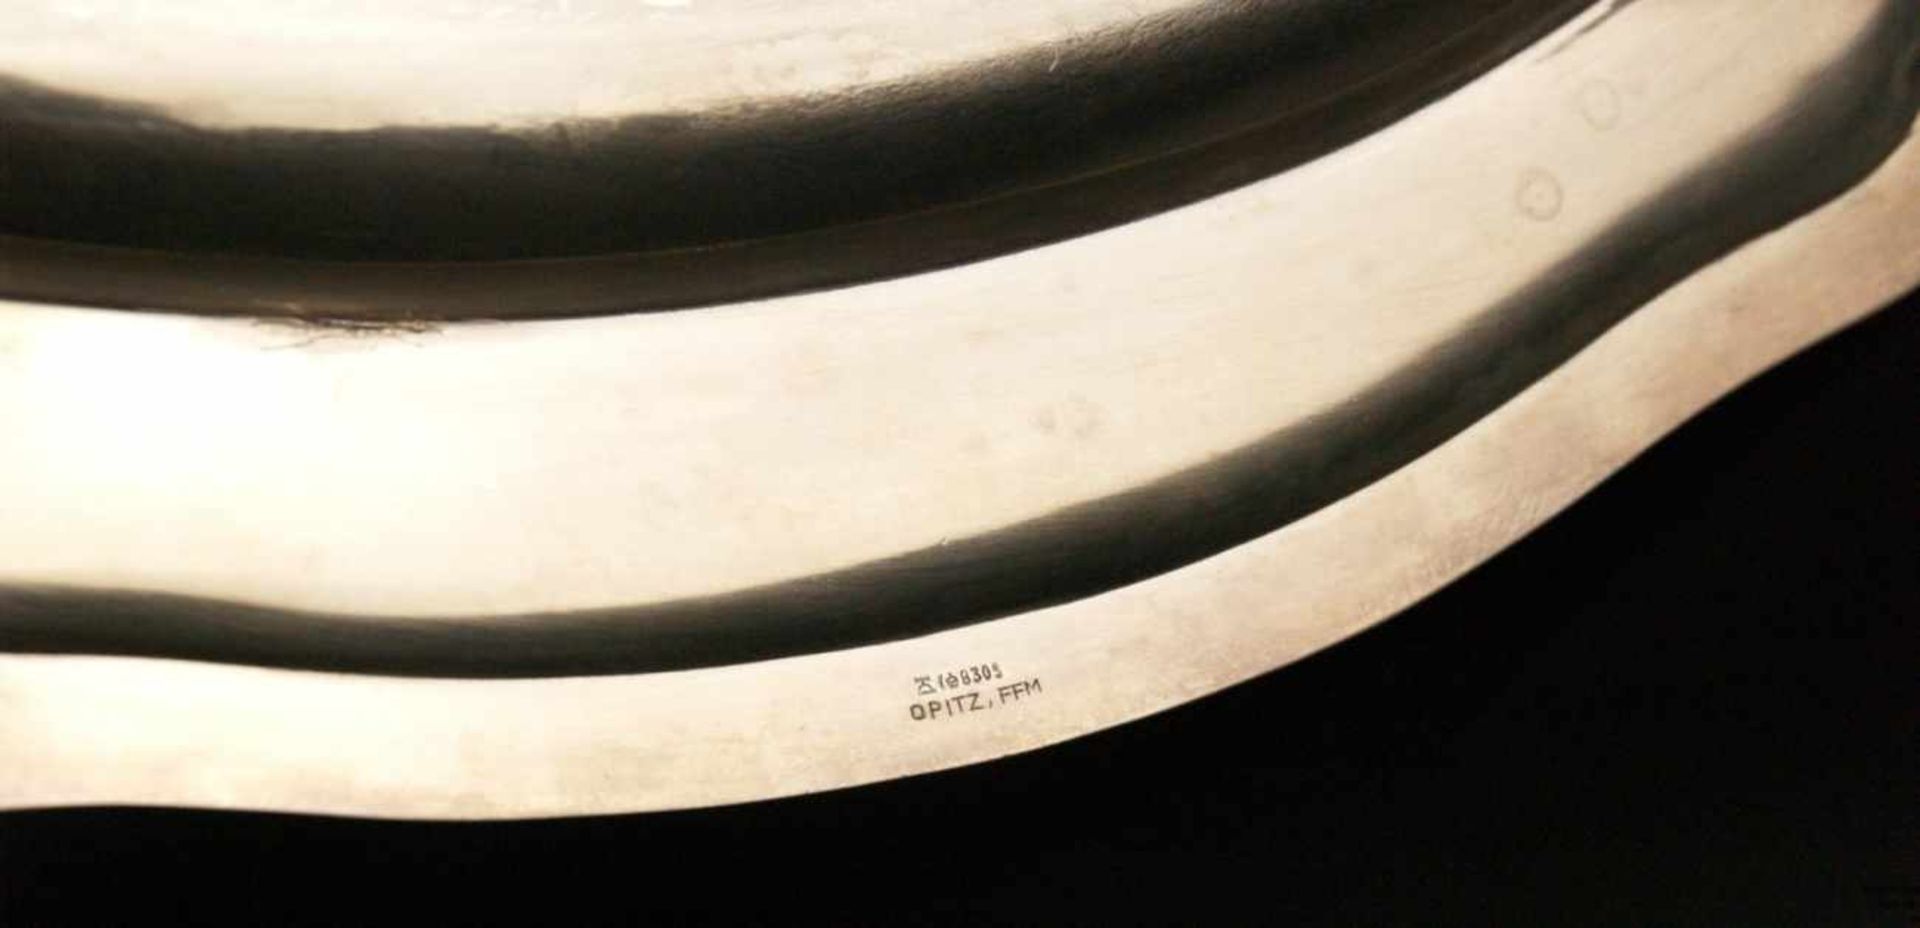 Silbertablett - Silber 830, gepunzt 'Opitz FFM', ovale Form mit geschweiftem Rand, im Spiegel - Bild 5 aus 5